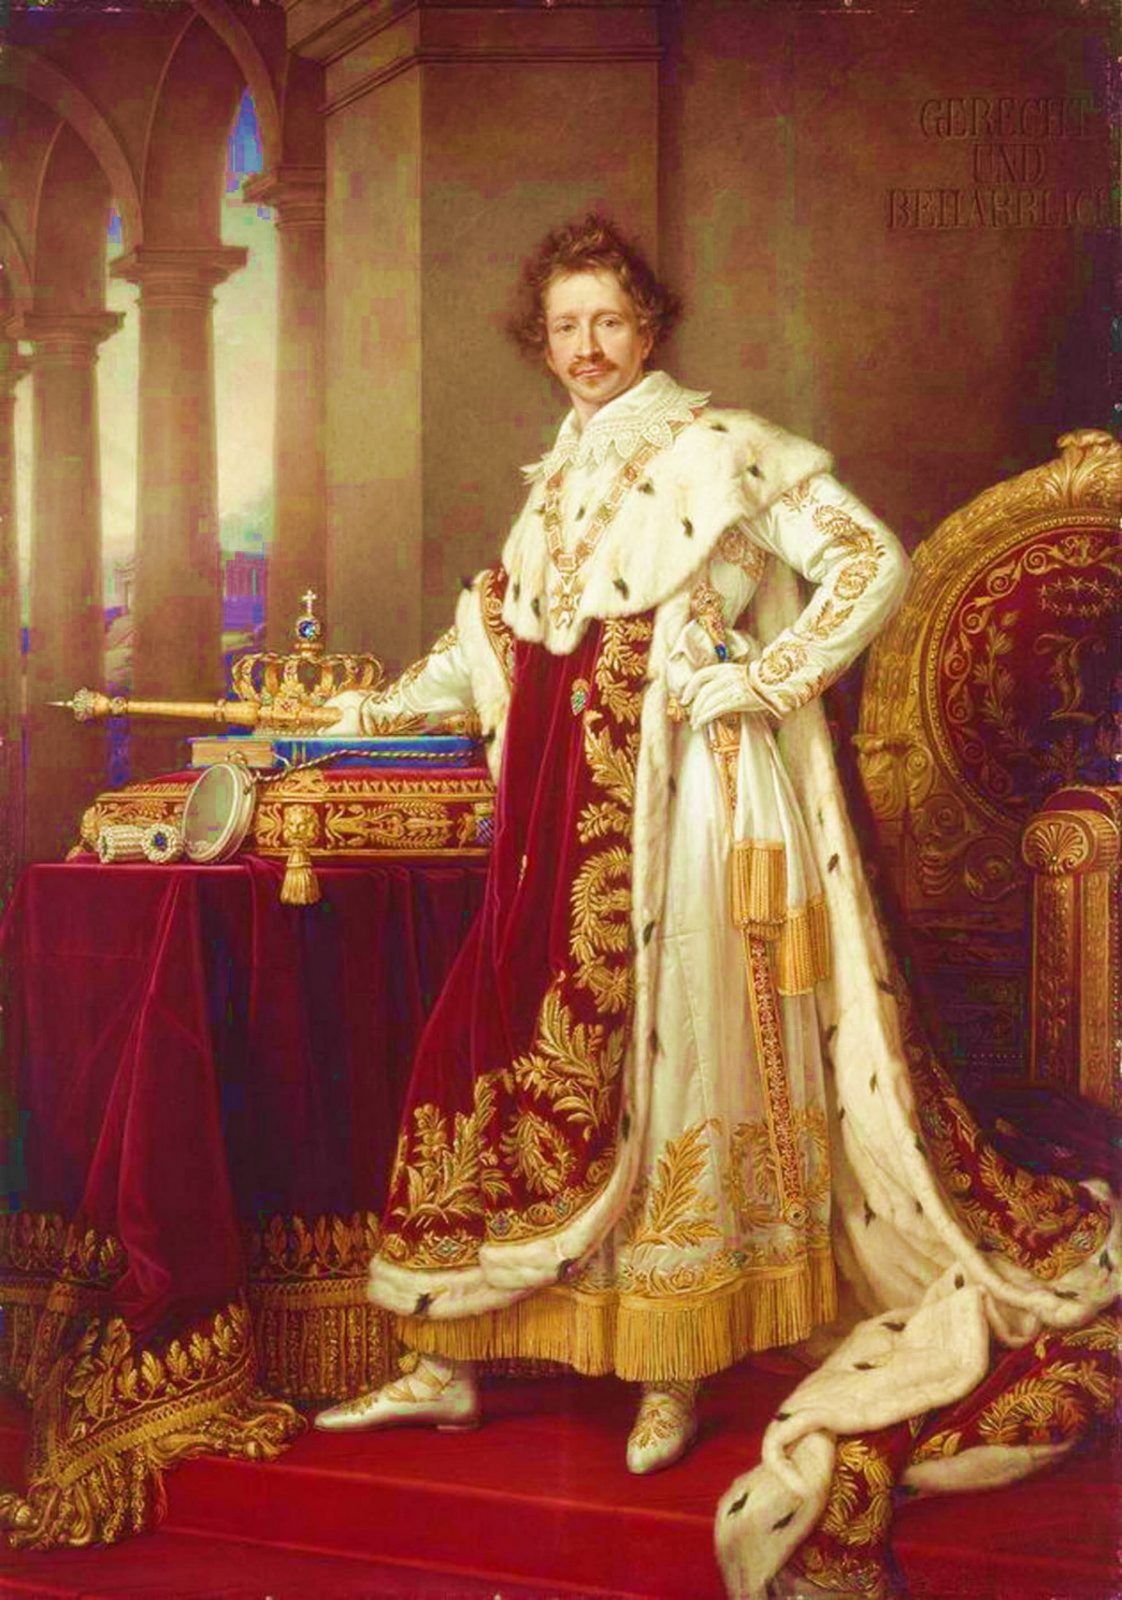 Людвиг I, король Баварии (1825-1848) — дедушка «сказочного короля» Людвига II. В 1810 году он женился на Терезе Саксен-Гильдбургхаузенской. Празднества, устроенные в честь свадьбы, положили начало празднику «Октоберфест»... Людвиг I умер в Ницце, пережив сына, когда уже царствовал его внук Людвиг II. Конная статуя его воздвигнута в Мюнхене в 1862 году, ещё при его жизни...